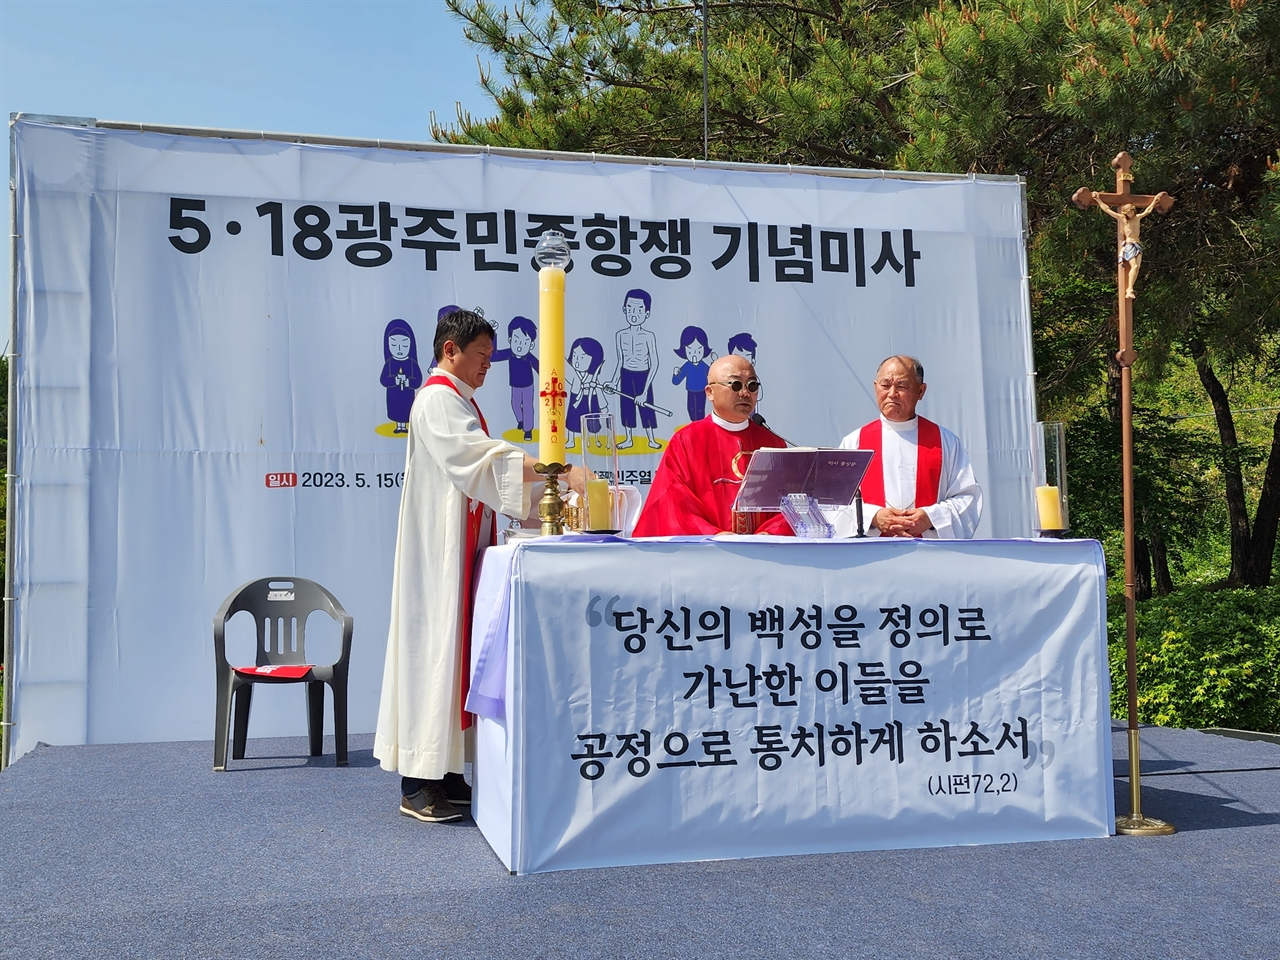 15일 오후 광주 망월묘역에서 천주교정의구현전국사제단 주관으로 열린 5·18광주민중항쟁 기념미사